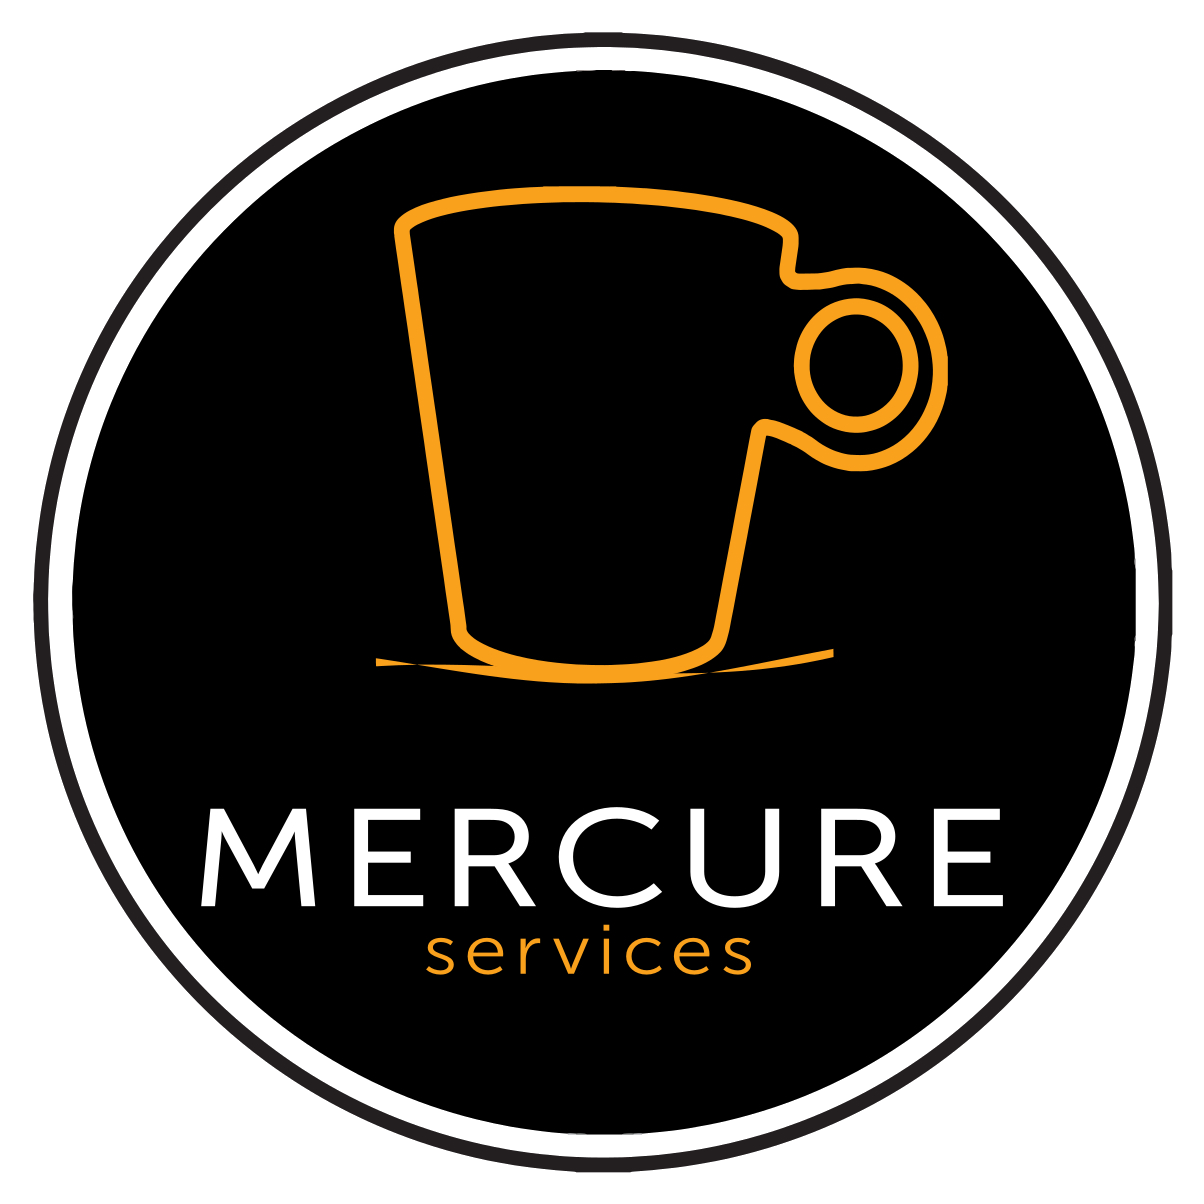 Mercure Services srl